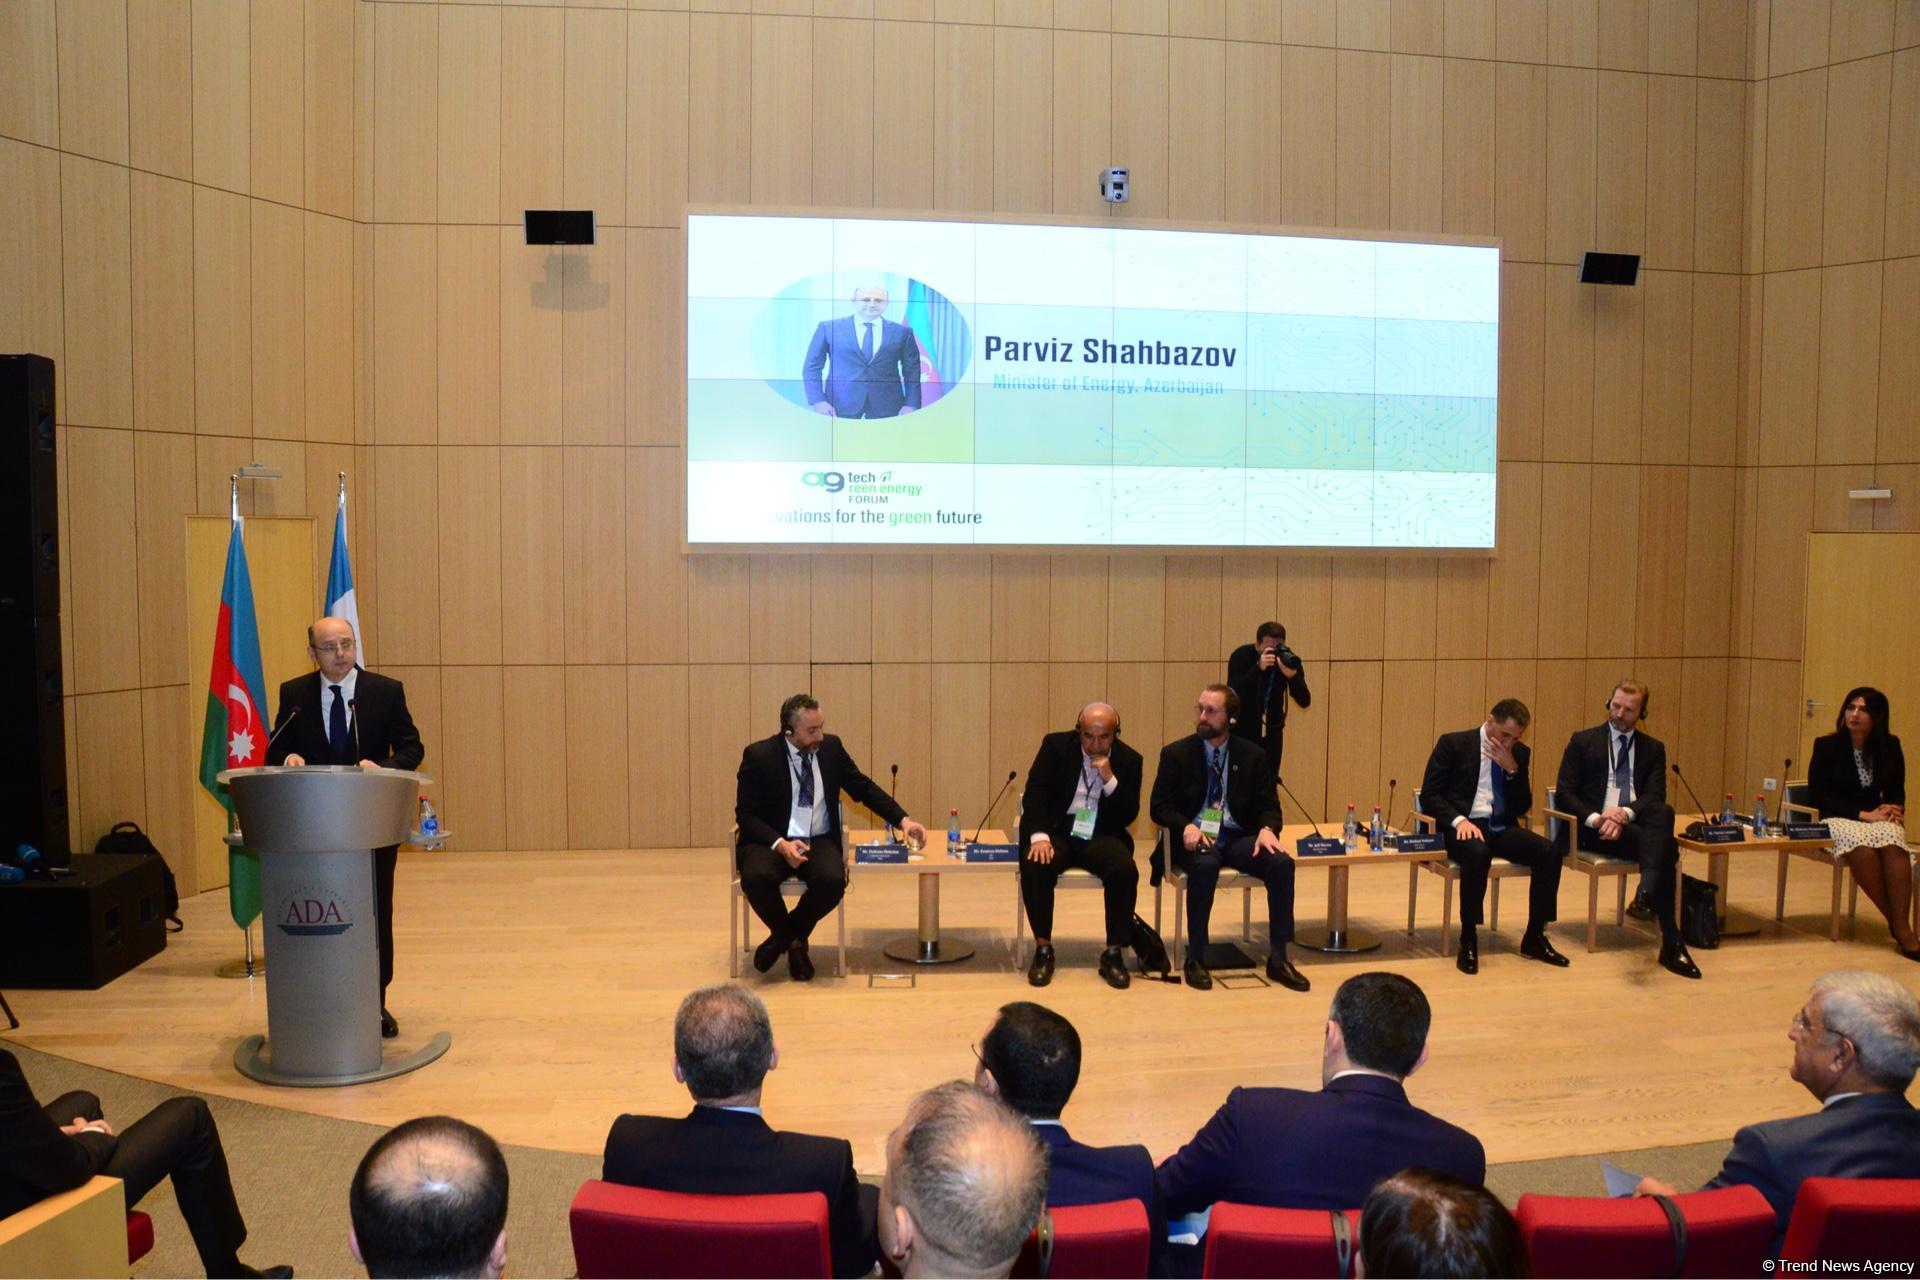 В Азербайджане создаются новые генерирующие мощности в сфере альтернативной энергетики - министр (ФОТО)